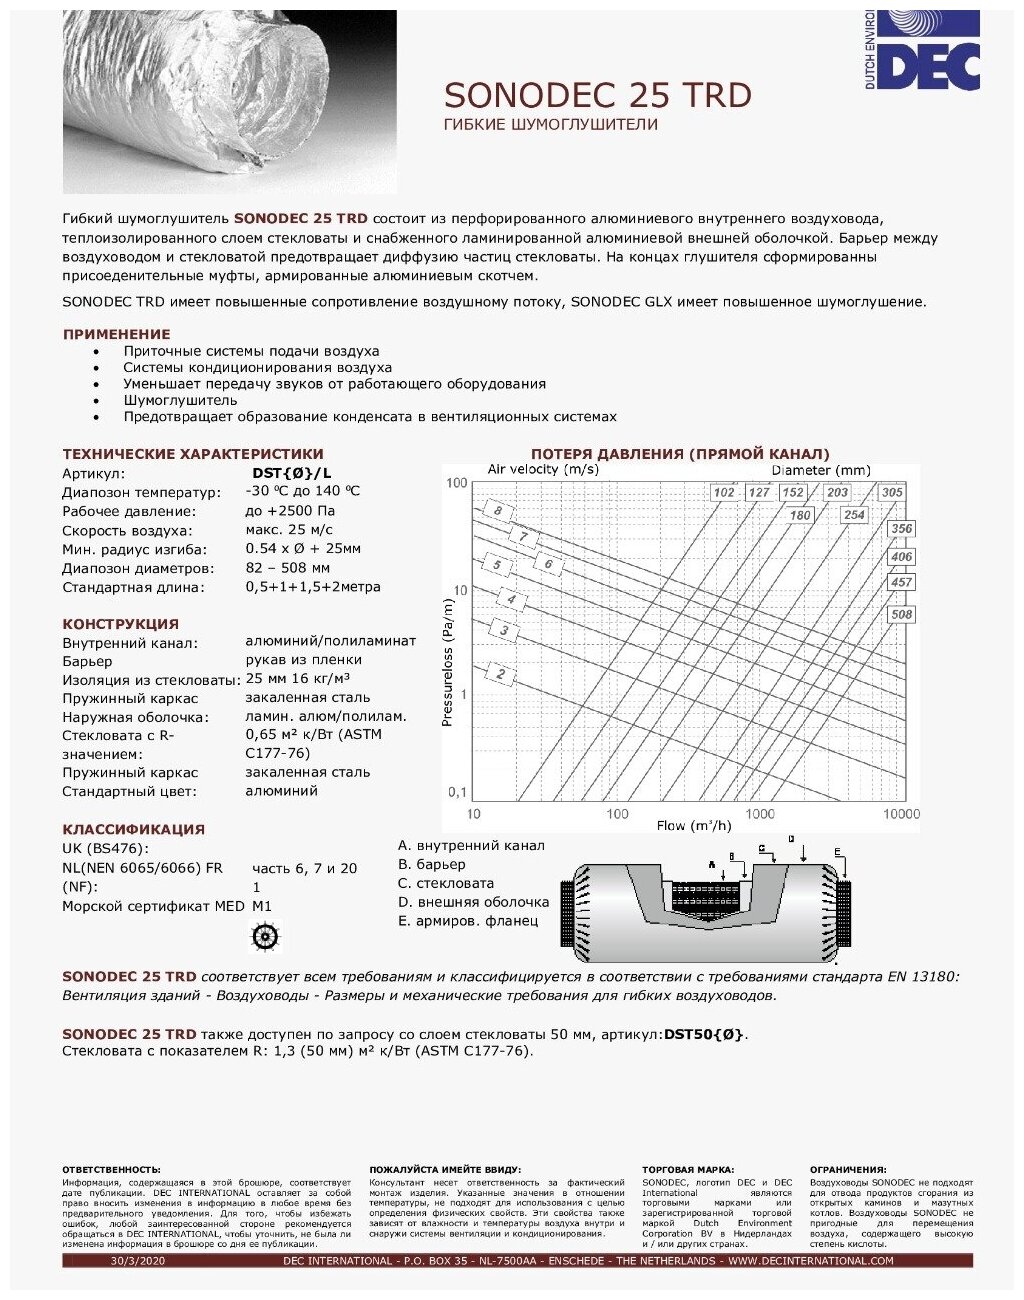 Гибкий шумоглушитель Sonodec 25TRD 160мм х 0,5м голландской компании Dec International - фотография № 3